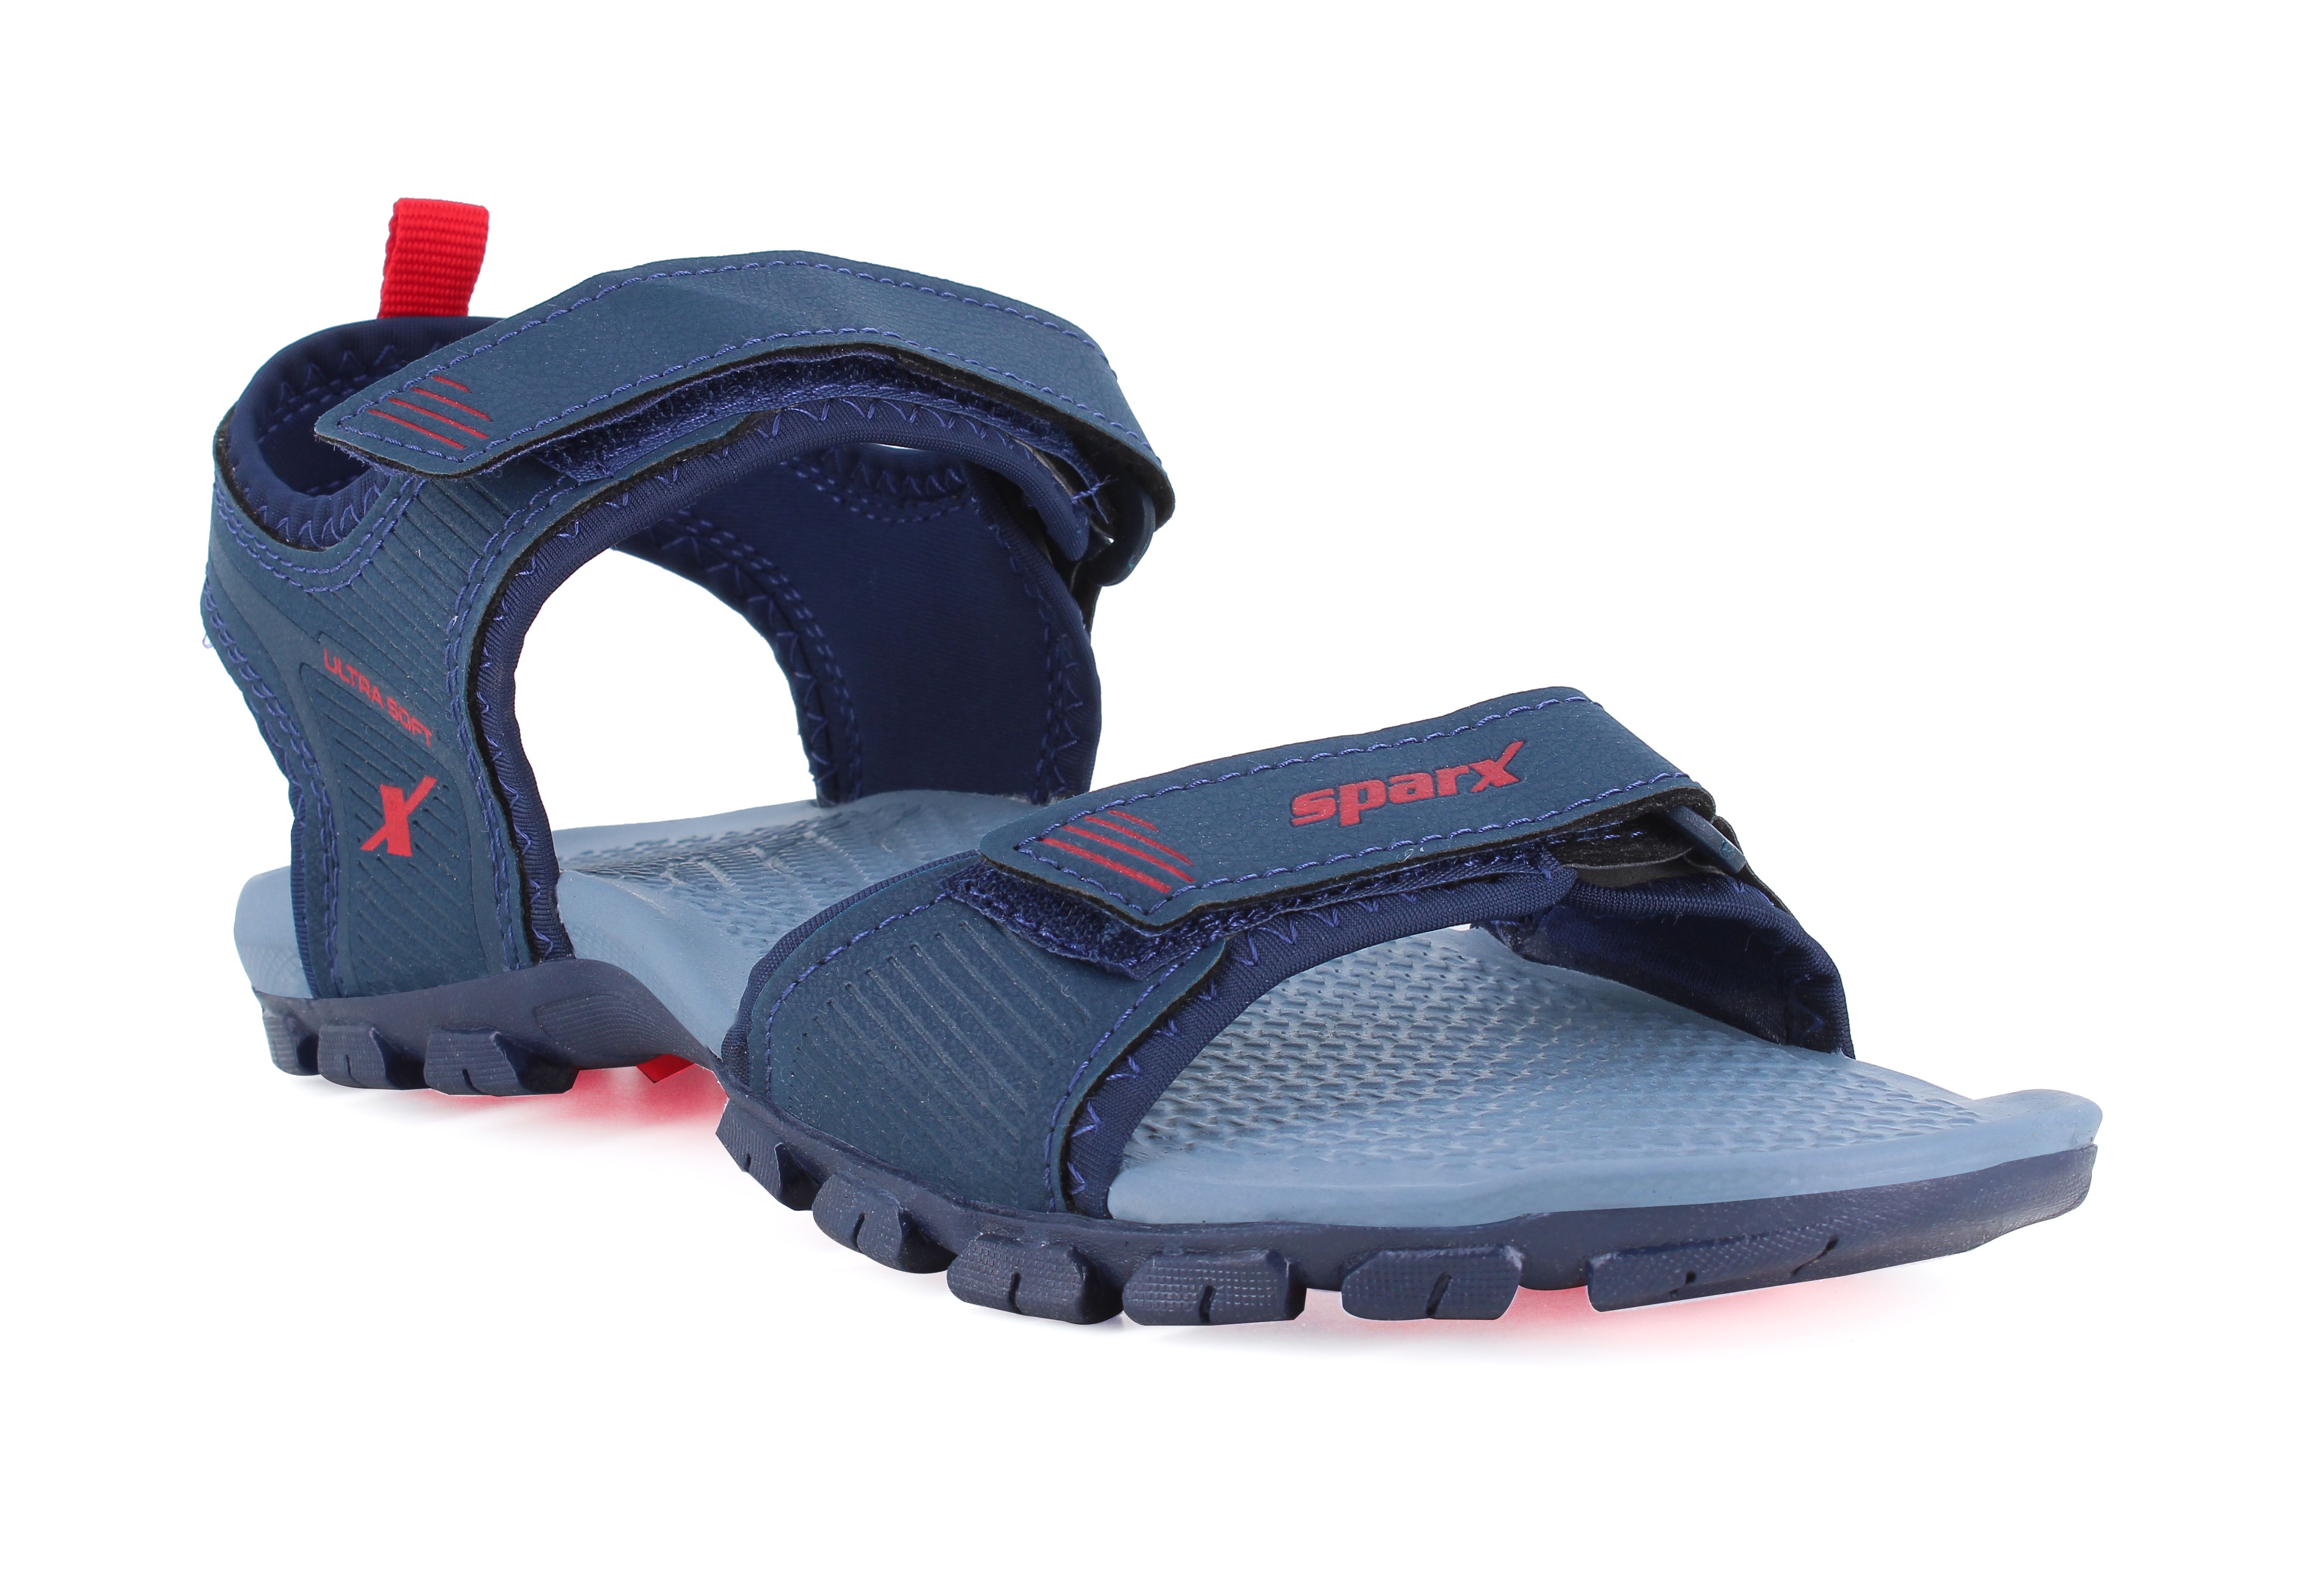     			Sparx - Navy Men's Floater Sandals